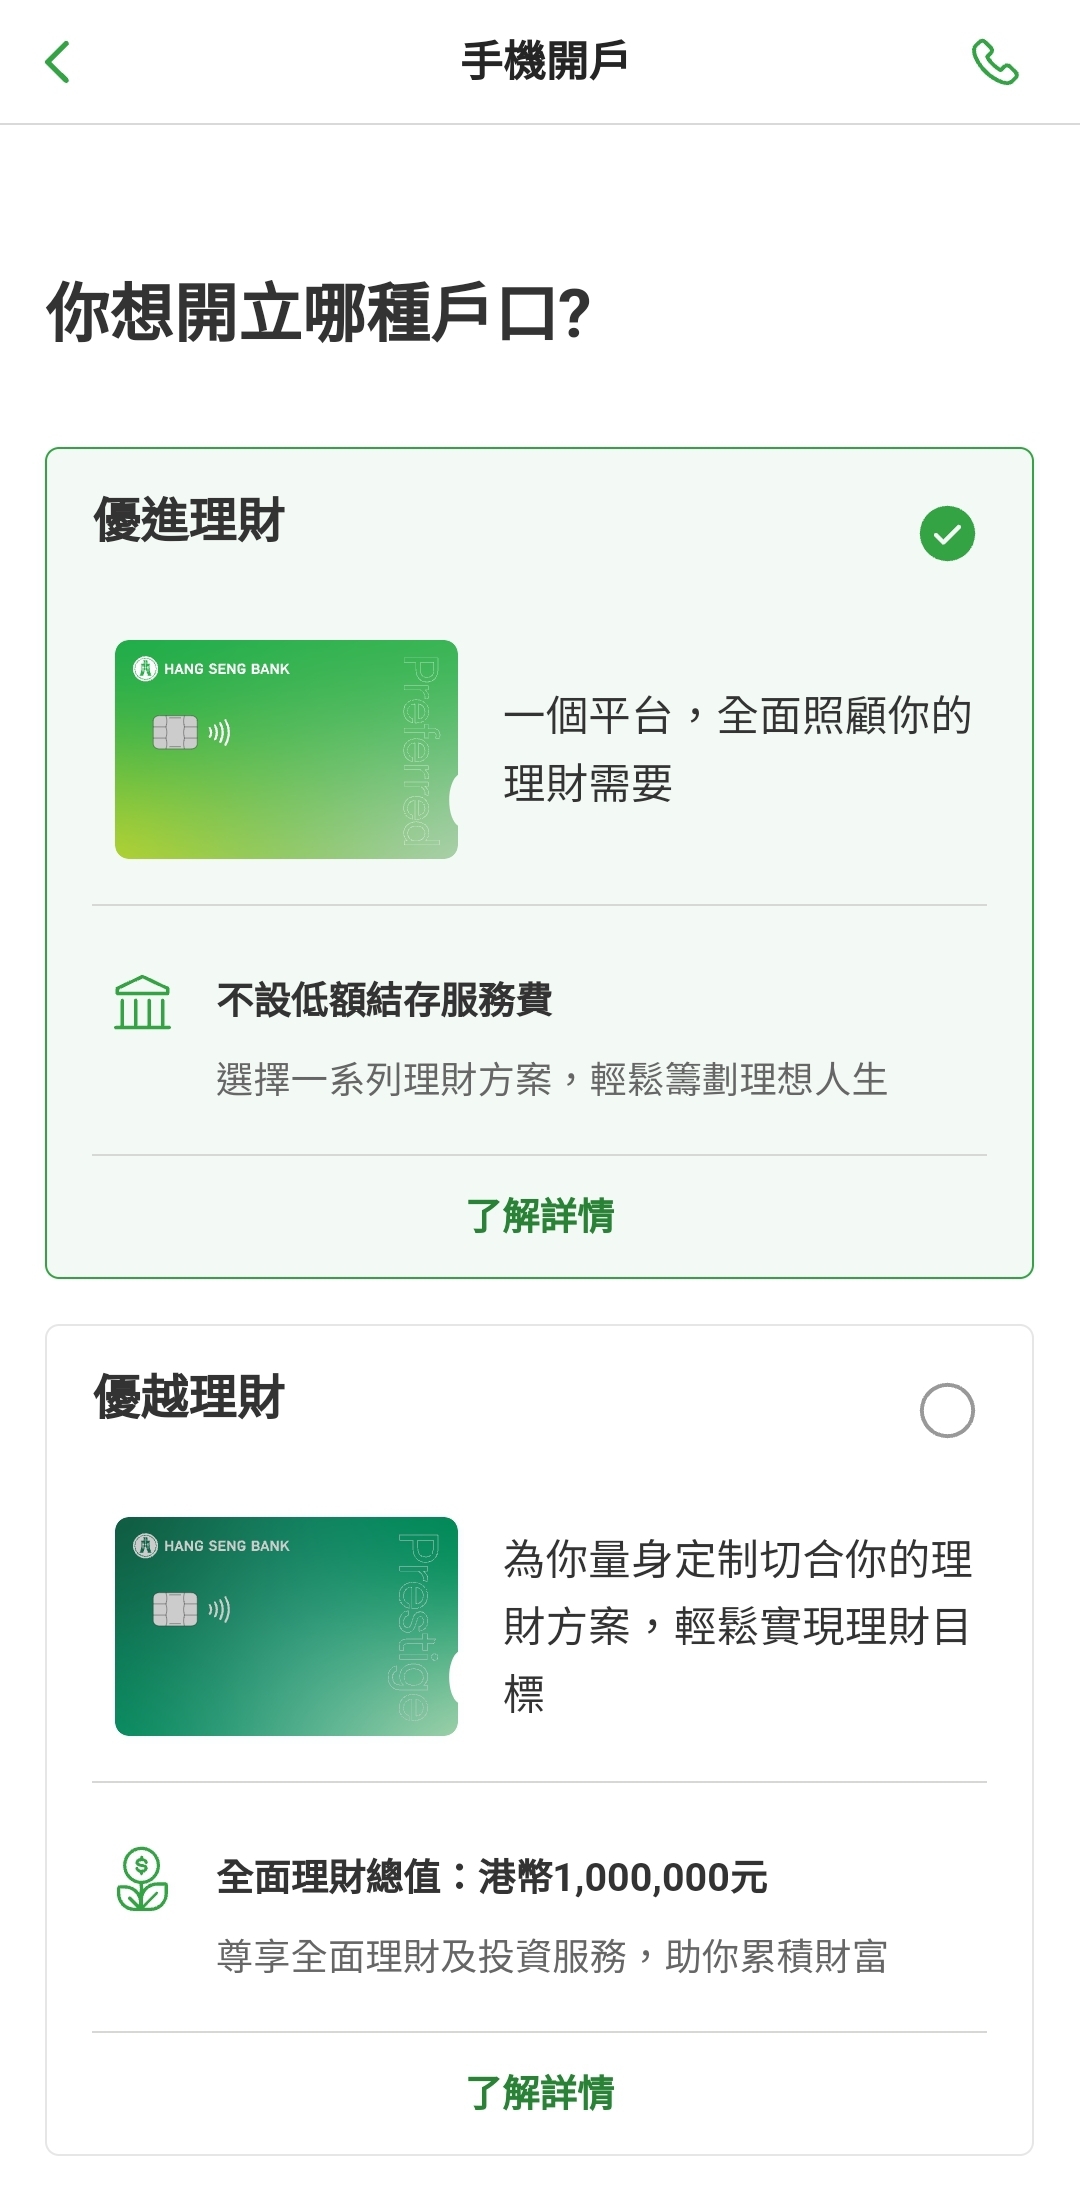 恒生新卡面提款卡Atm Card | 香港信用卡討論區